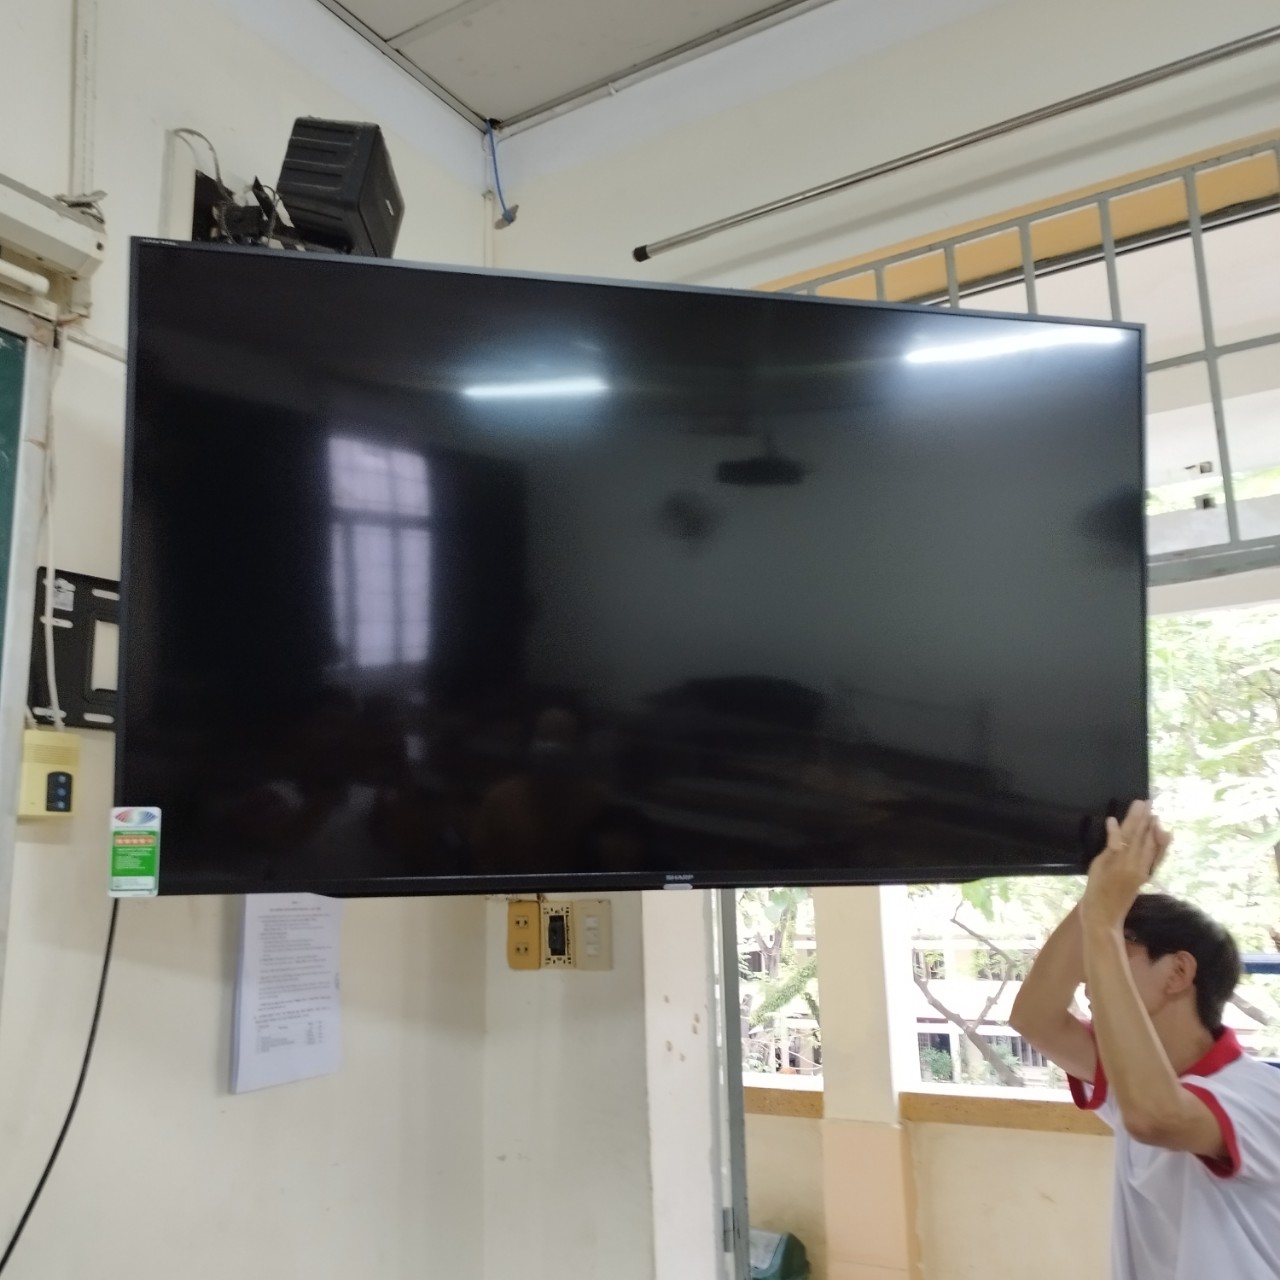 Tivi LCD là gì?